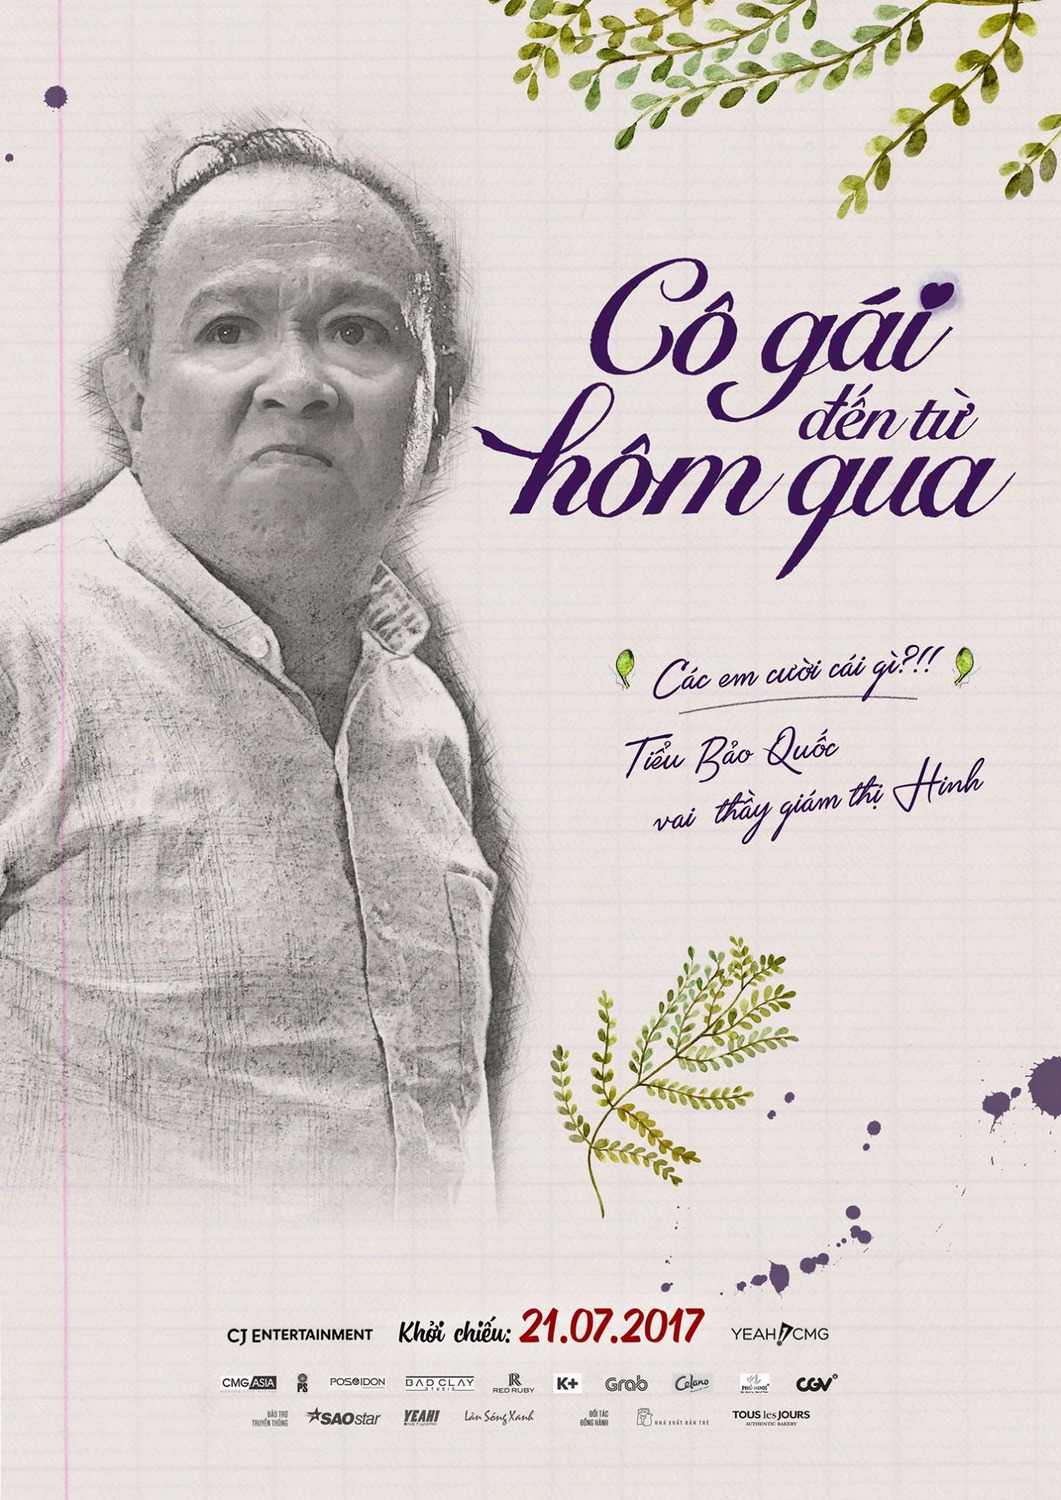 Extra Large Movie Poster Image for Co gai den tu hom qua (#6 of 14)